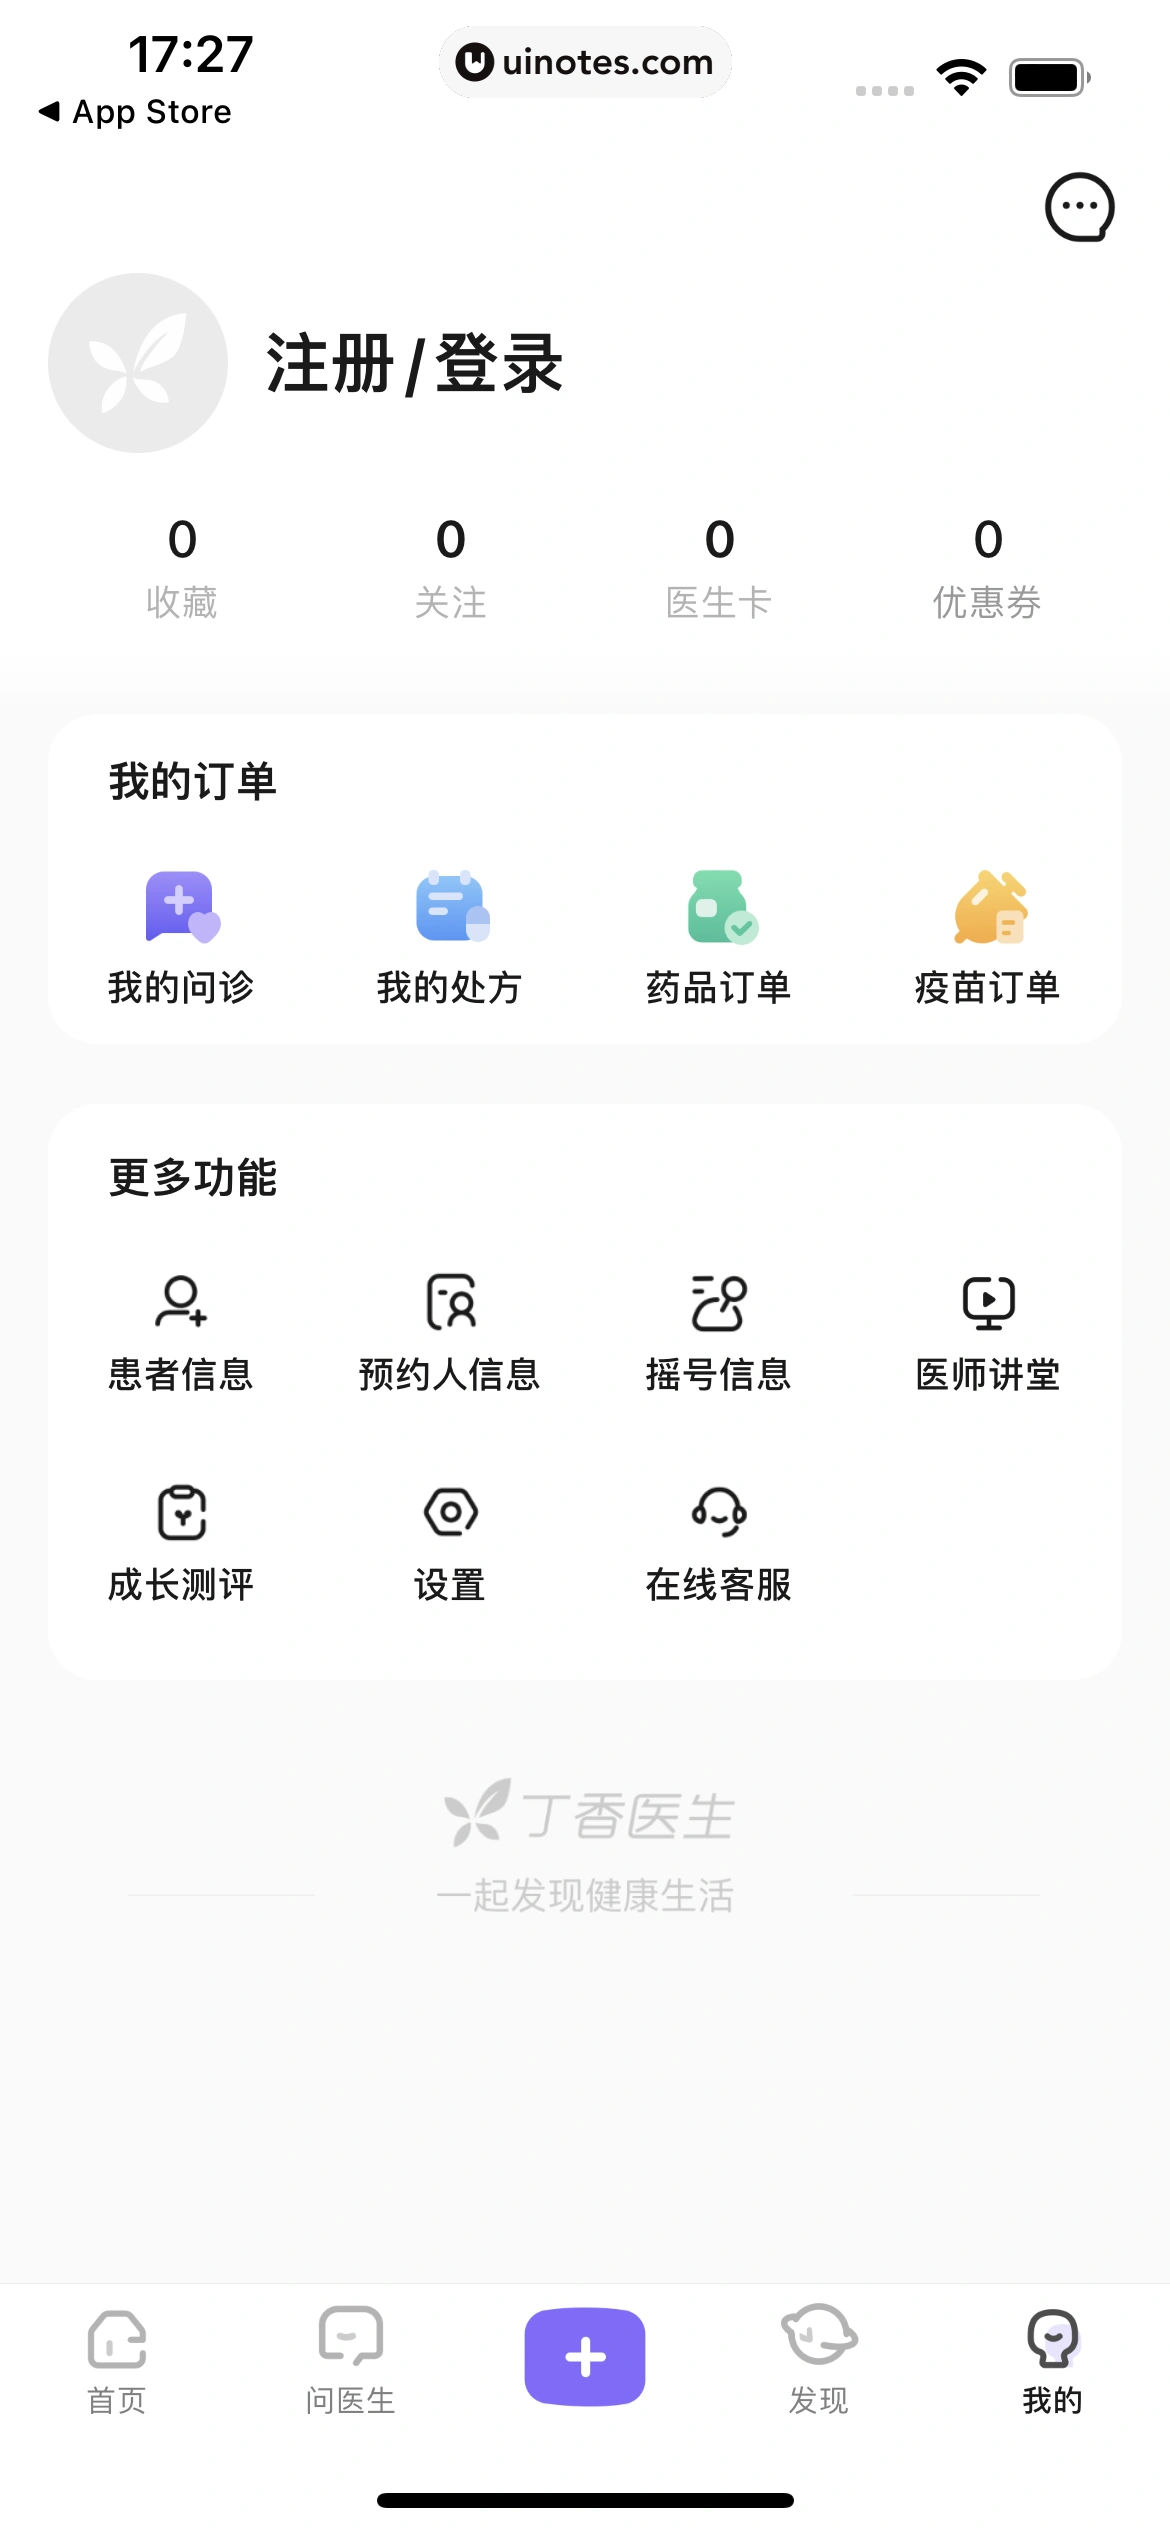 丁香医生 App 截图 010 - UI Notes